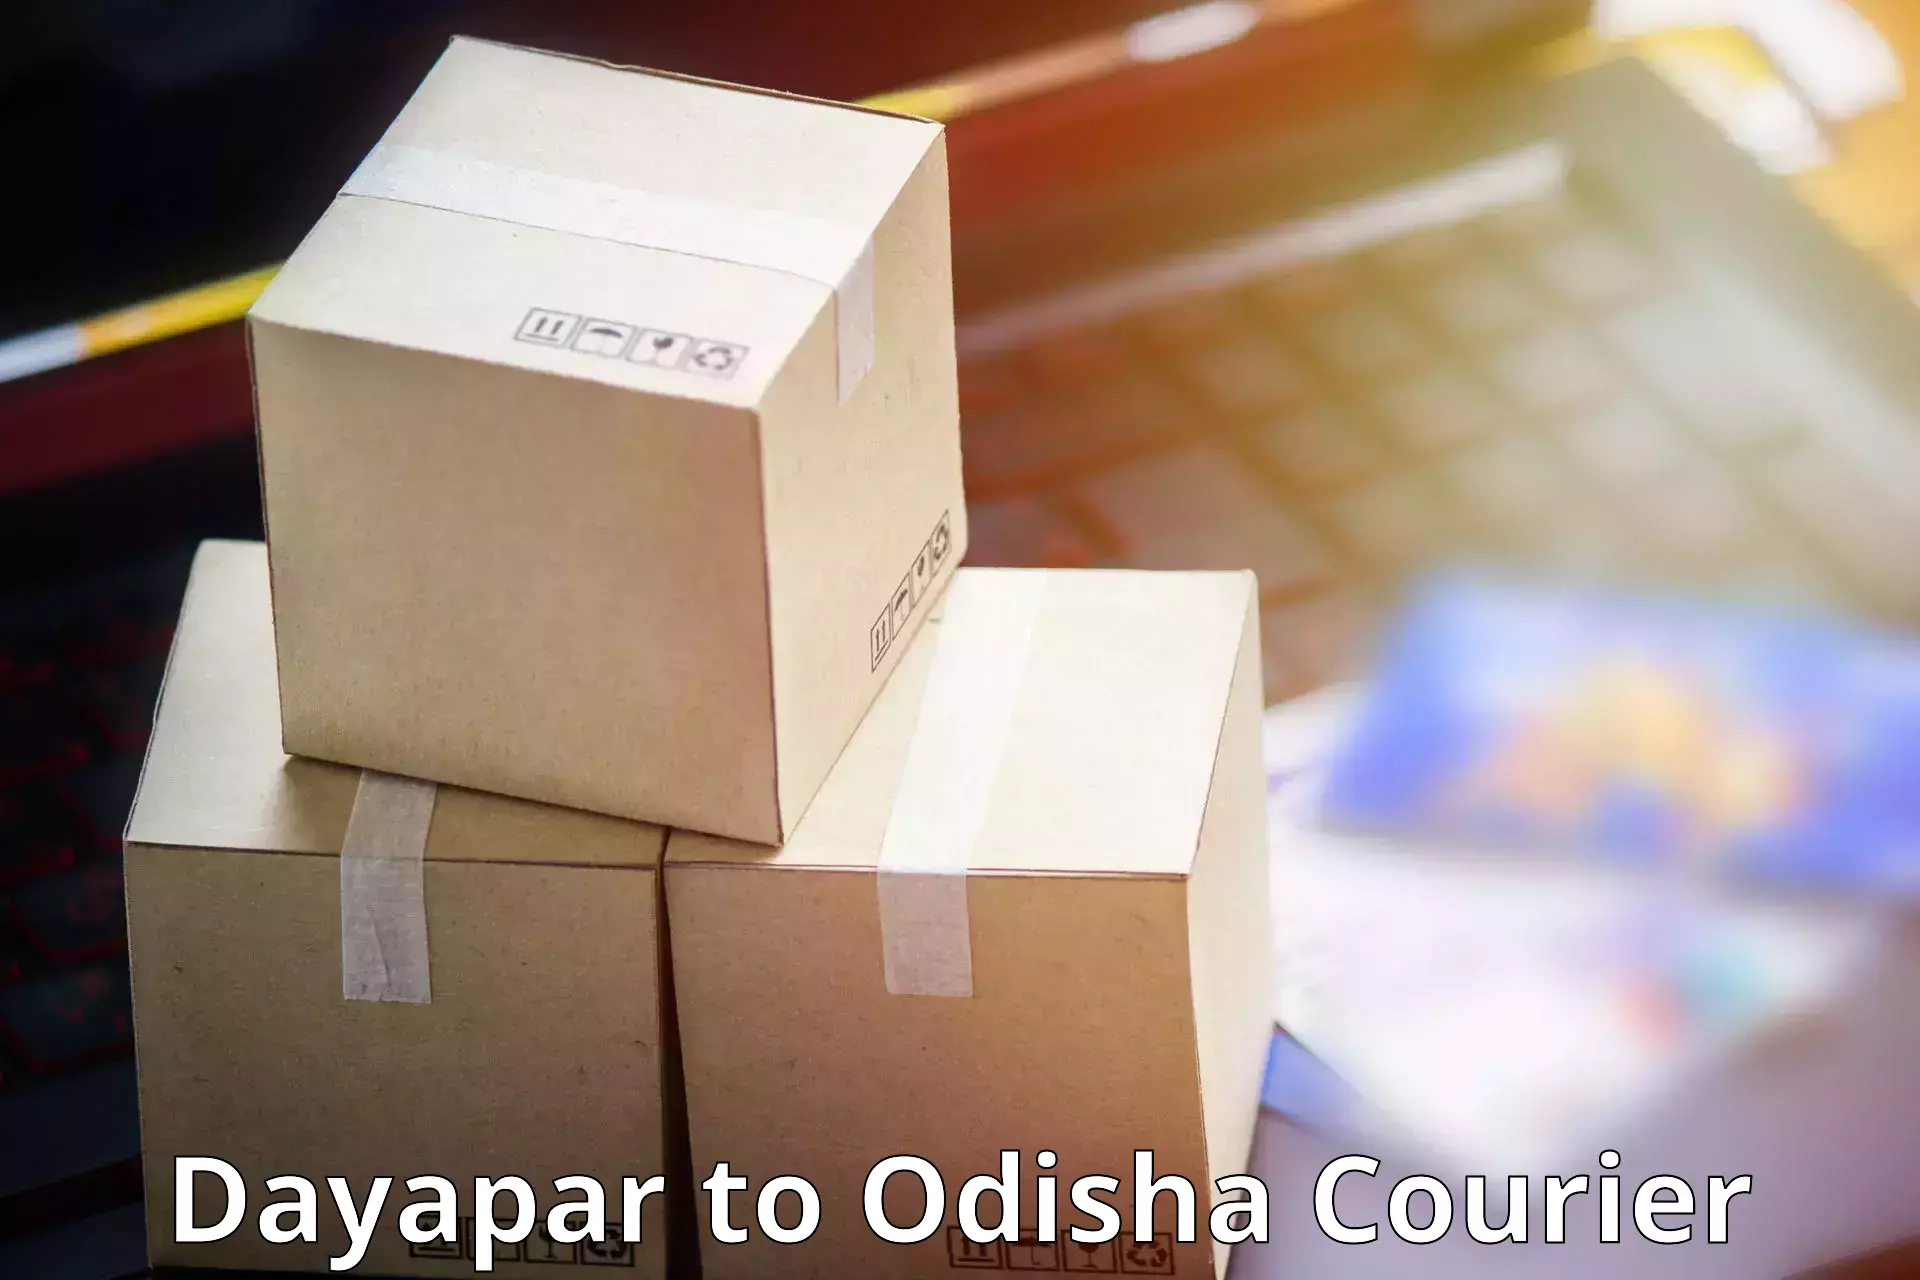 Reliable parcel services Dayapar to Odisha